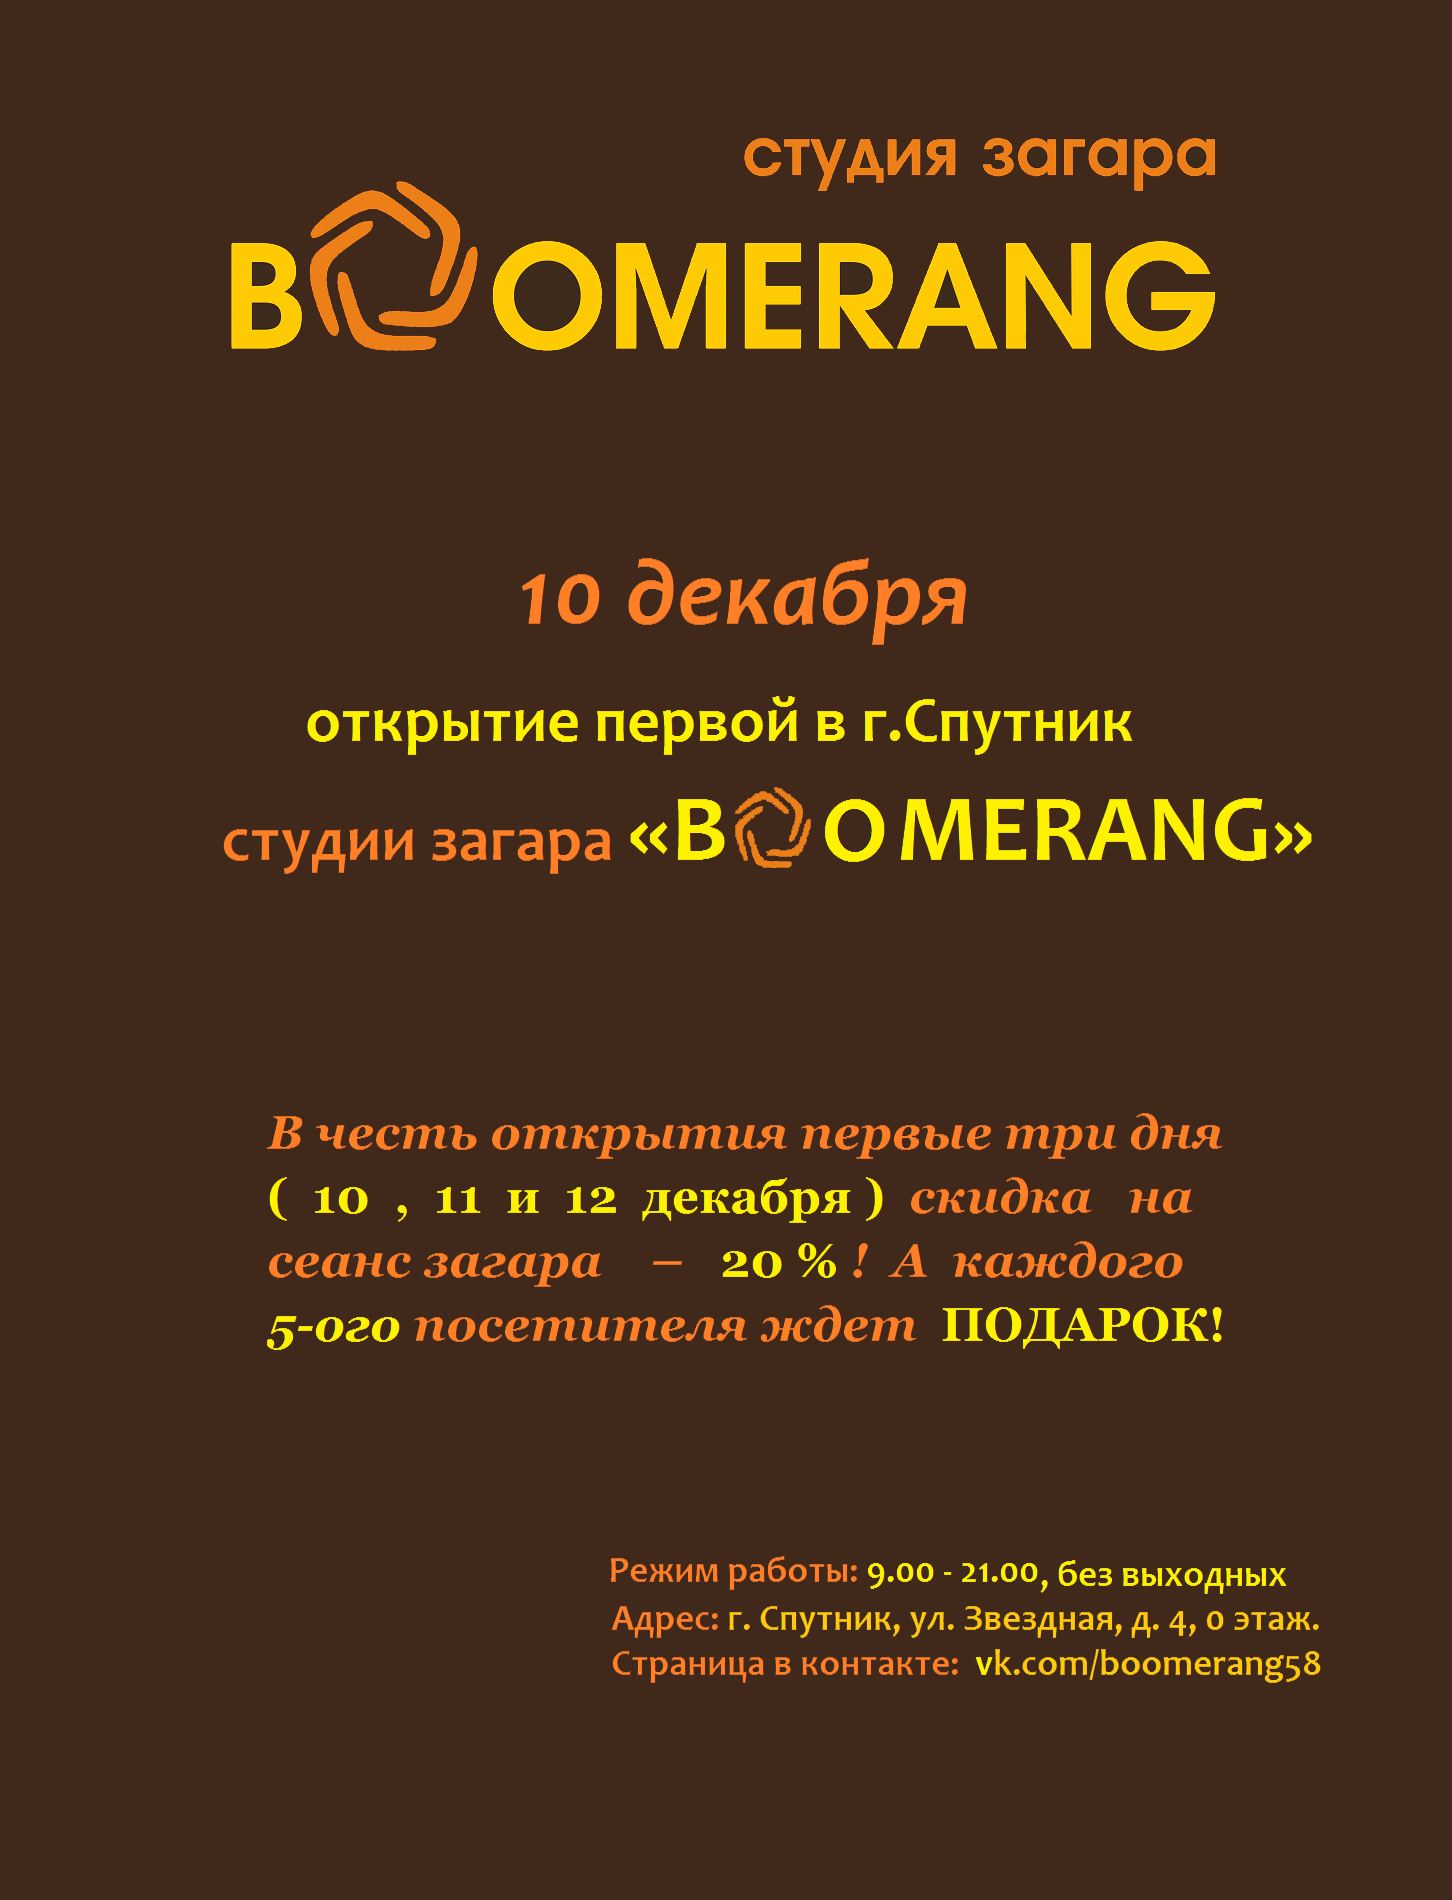 В г. Спутник открывается первая студия загара "Boomerang"